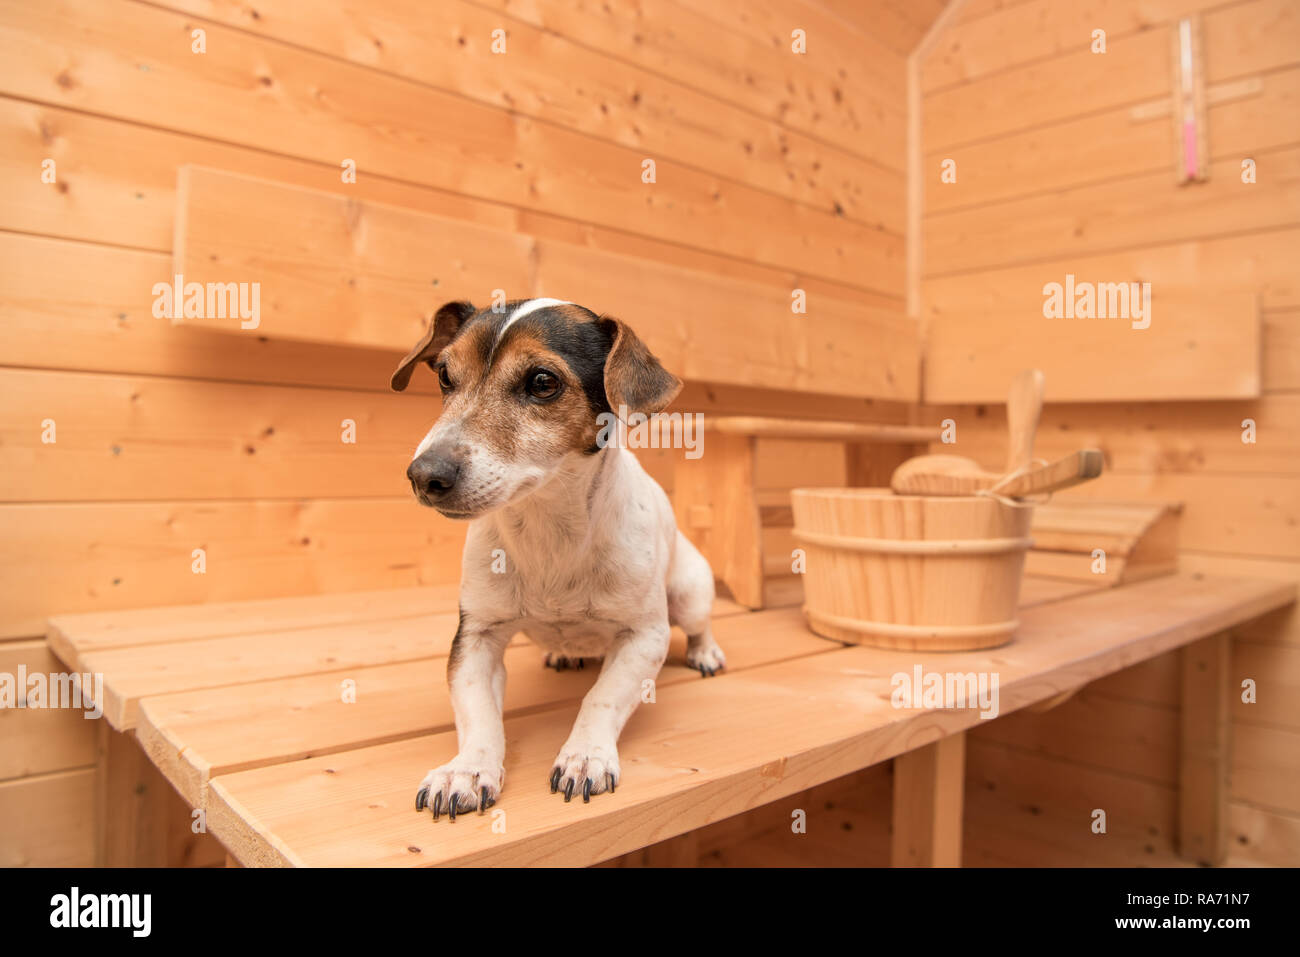 Hund in der Sauna. Entspannen im Wellnessbereich. Eine tricolor funny Jack  Russell Terrier Stockfotografie - Alamy